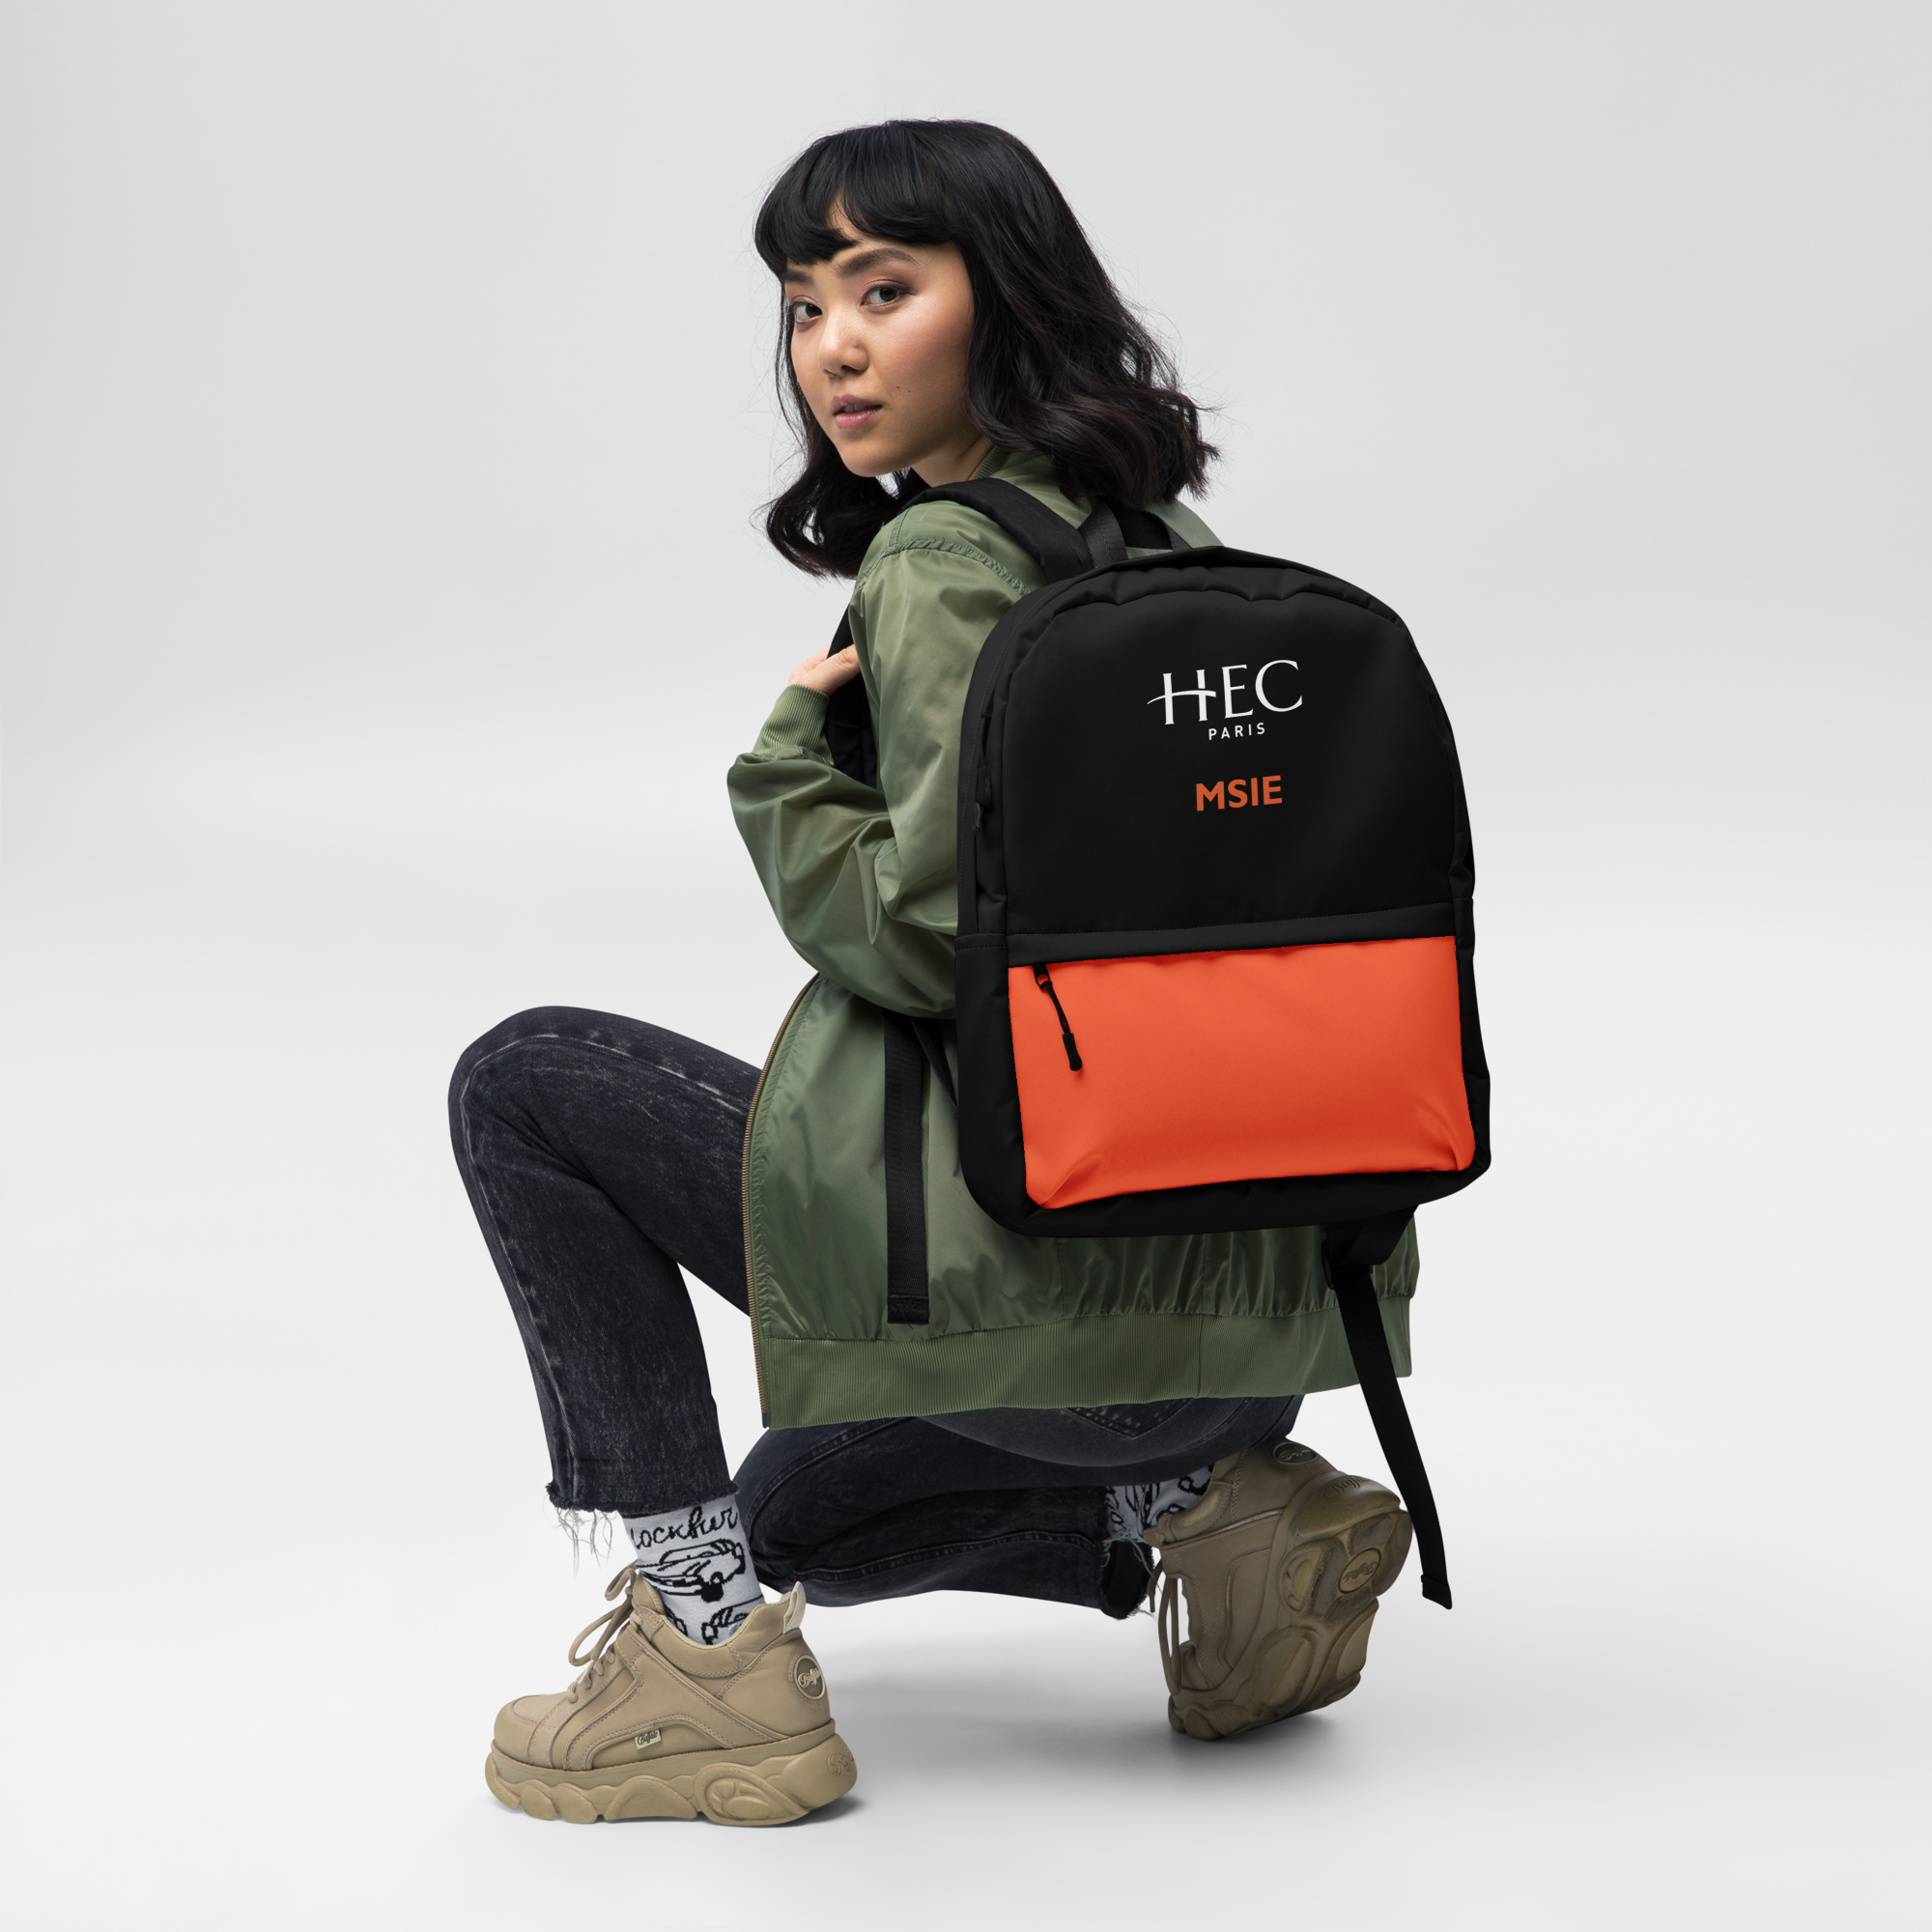 HEC Paris MSIE Backpack